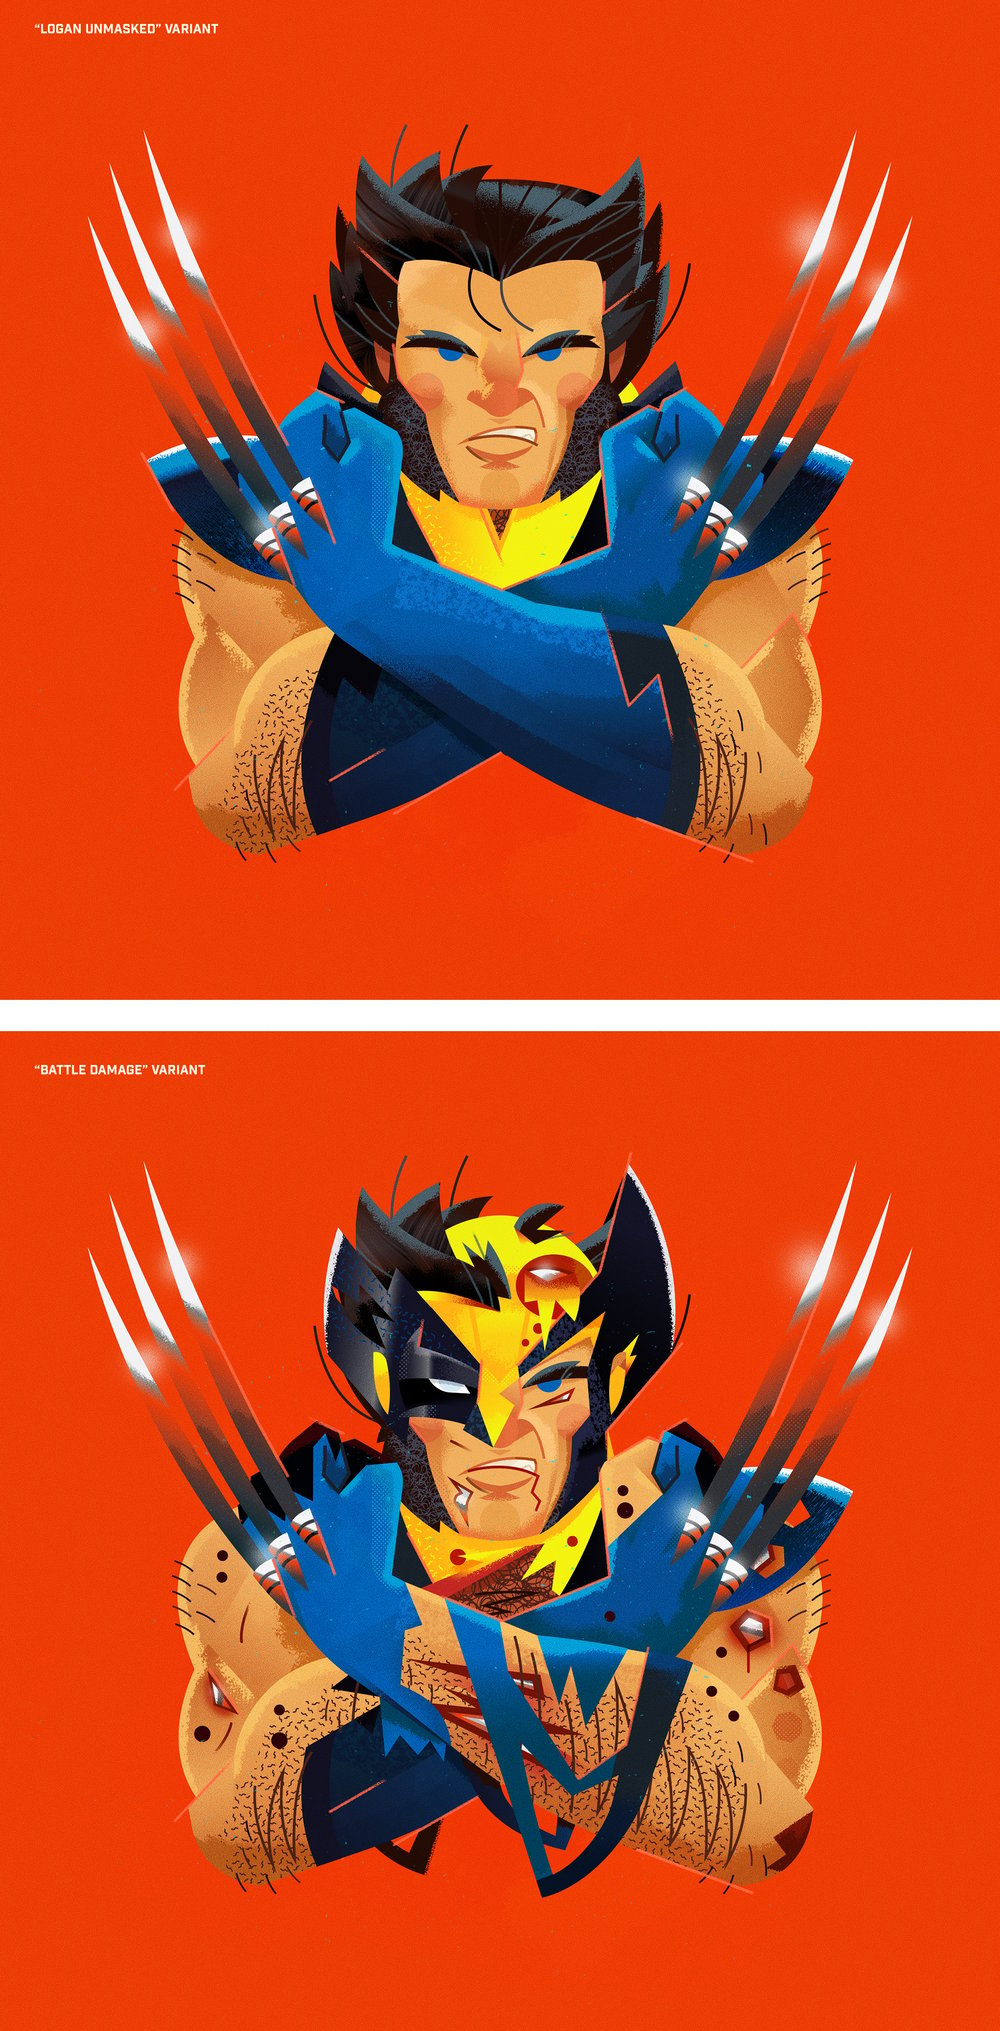 Portrait of Wolverine (Logan Unmasked & Battle Damage Variants)